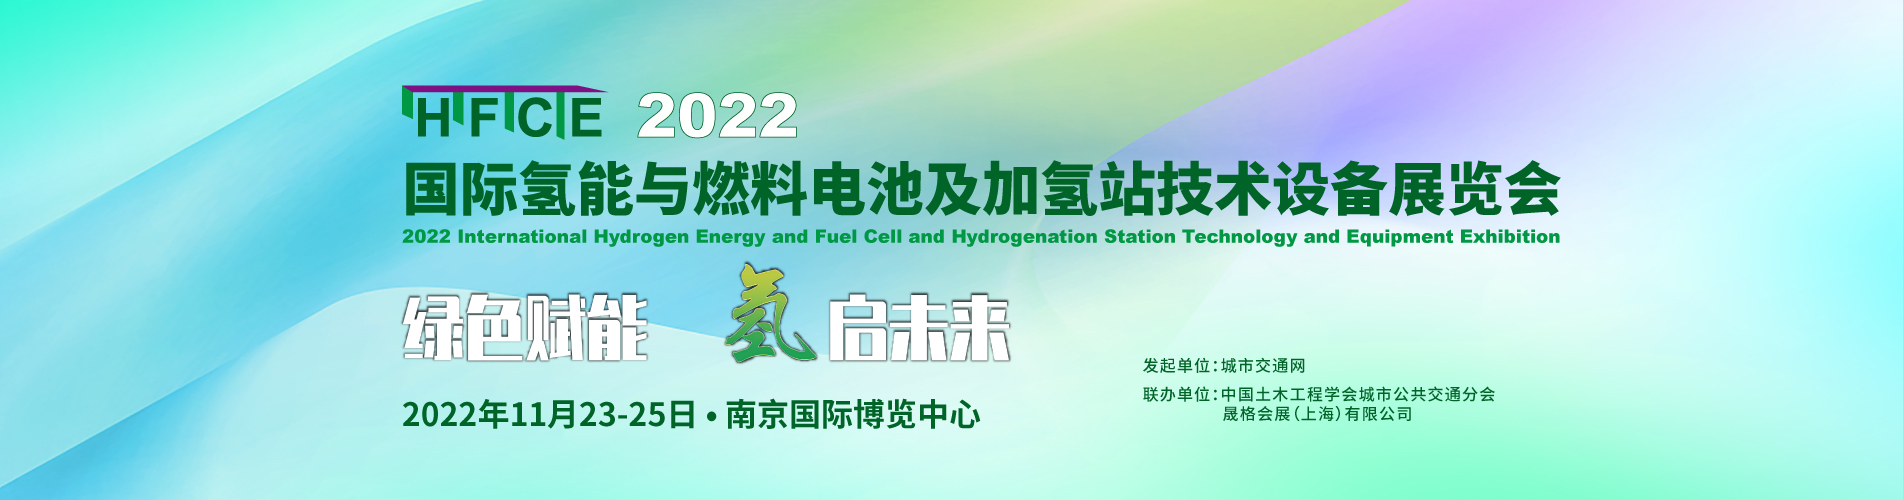 南京-22年-氢燃料-Banner图-2-1903x500.jpg